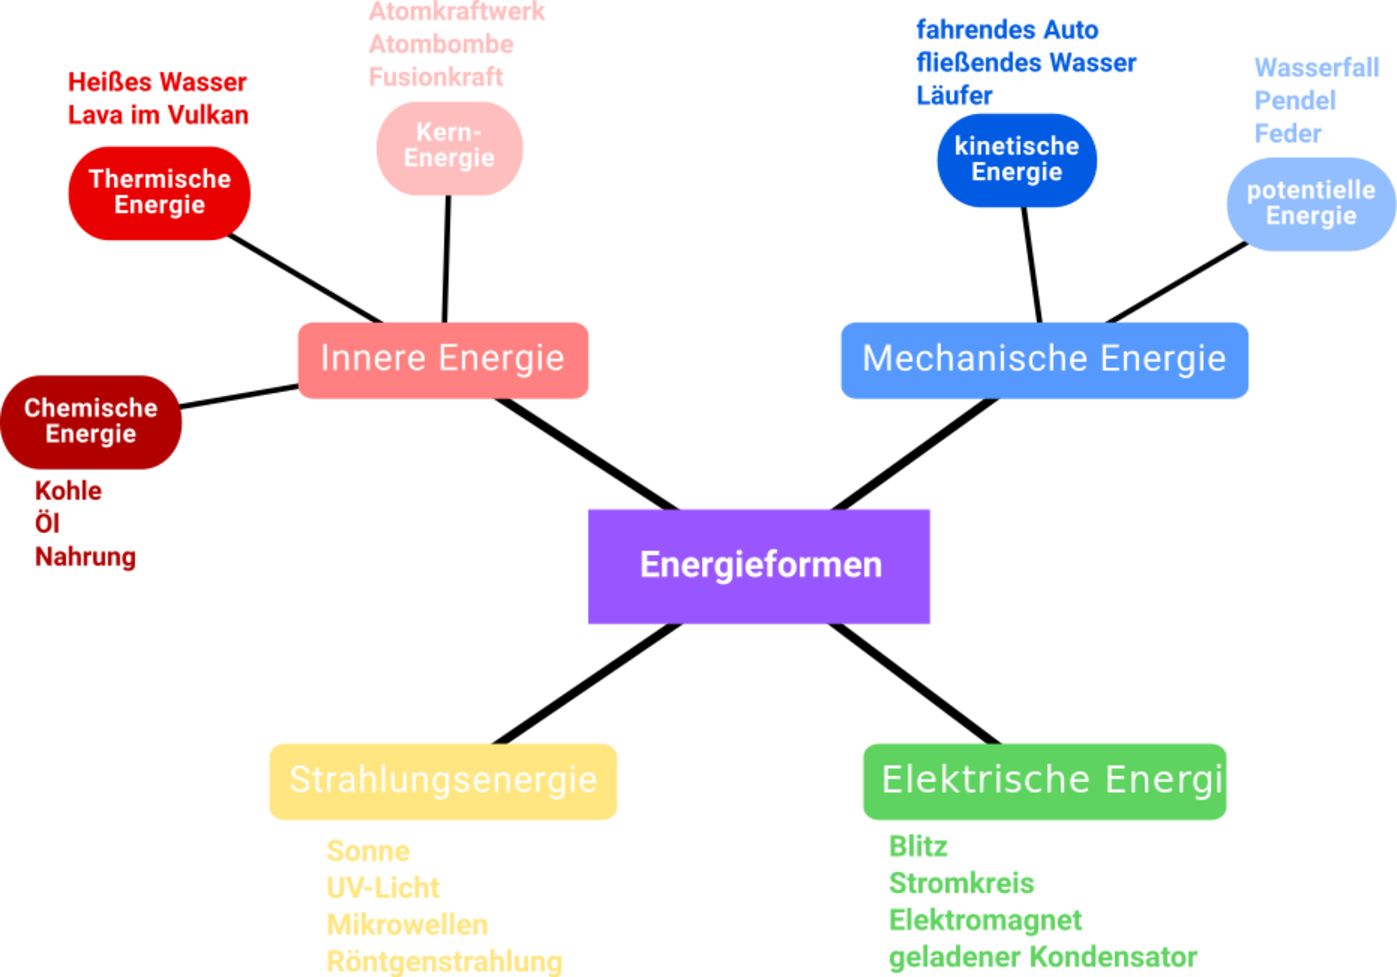 Energieumsatz bei chemischen Reaktionen/Energie aus physikalischer